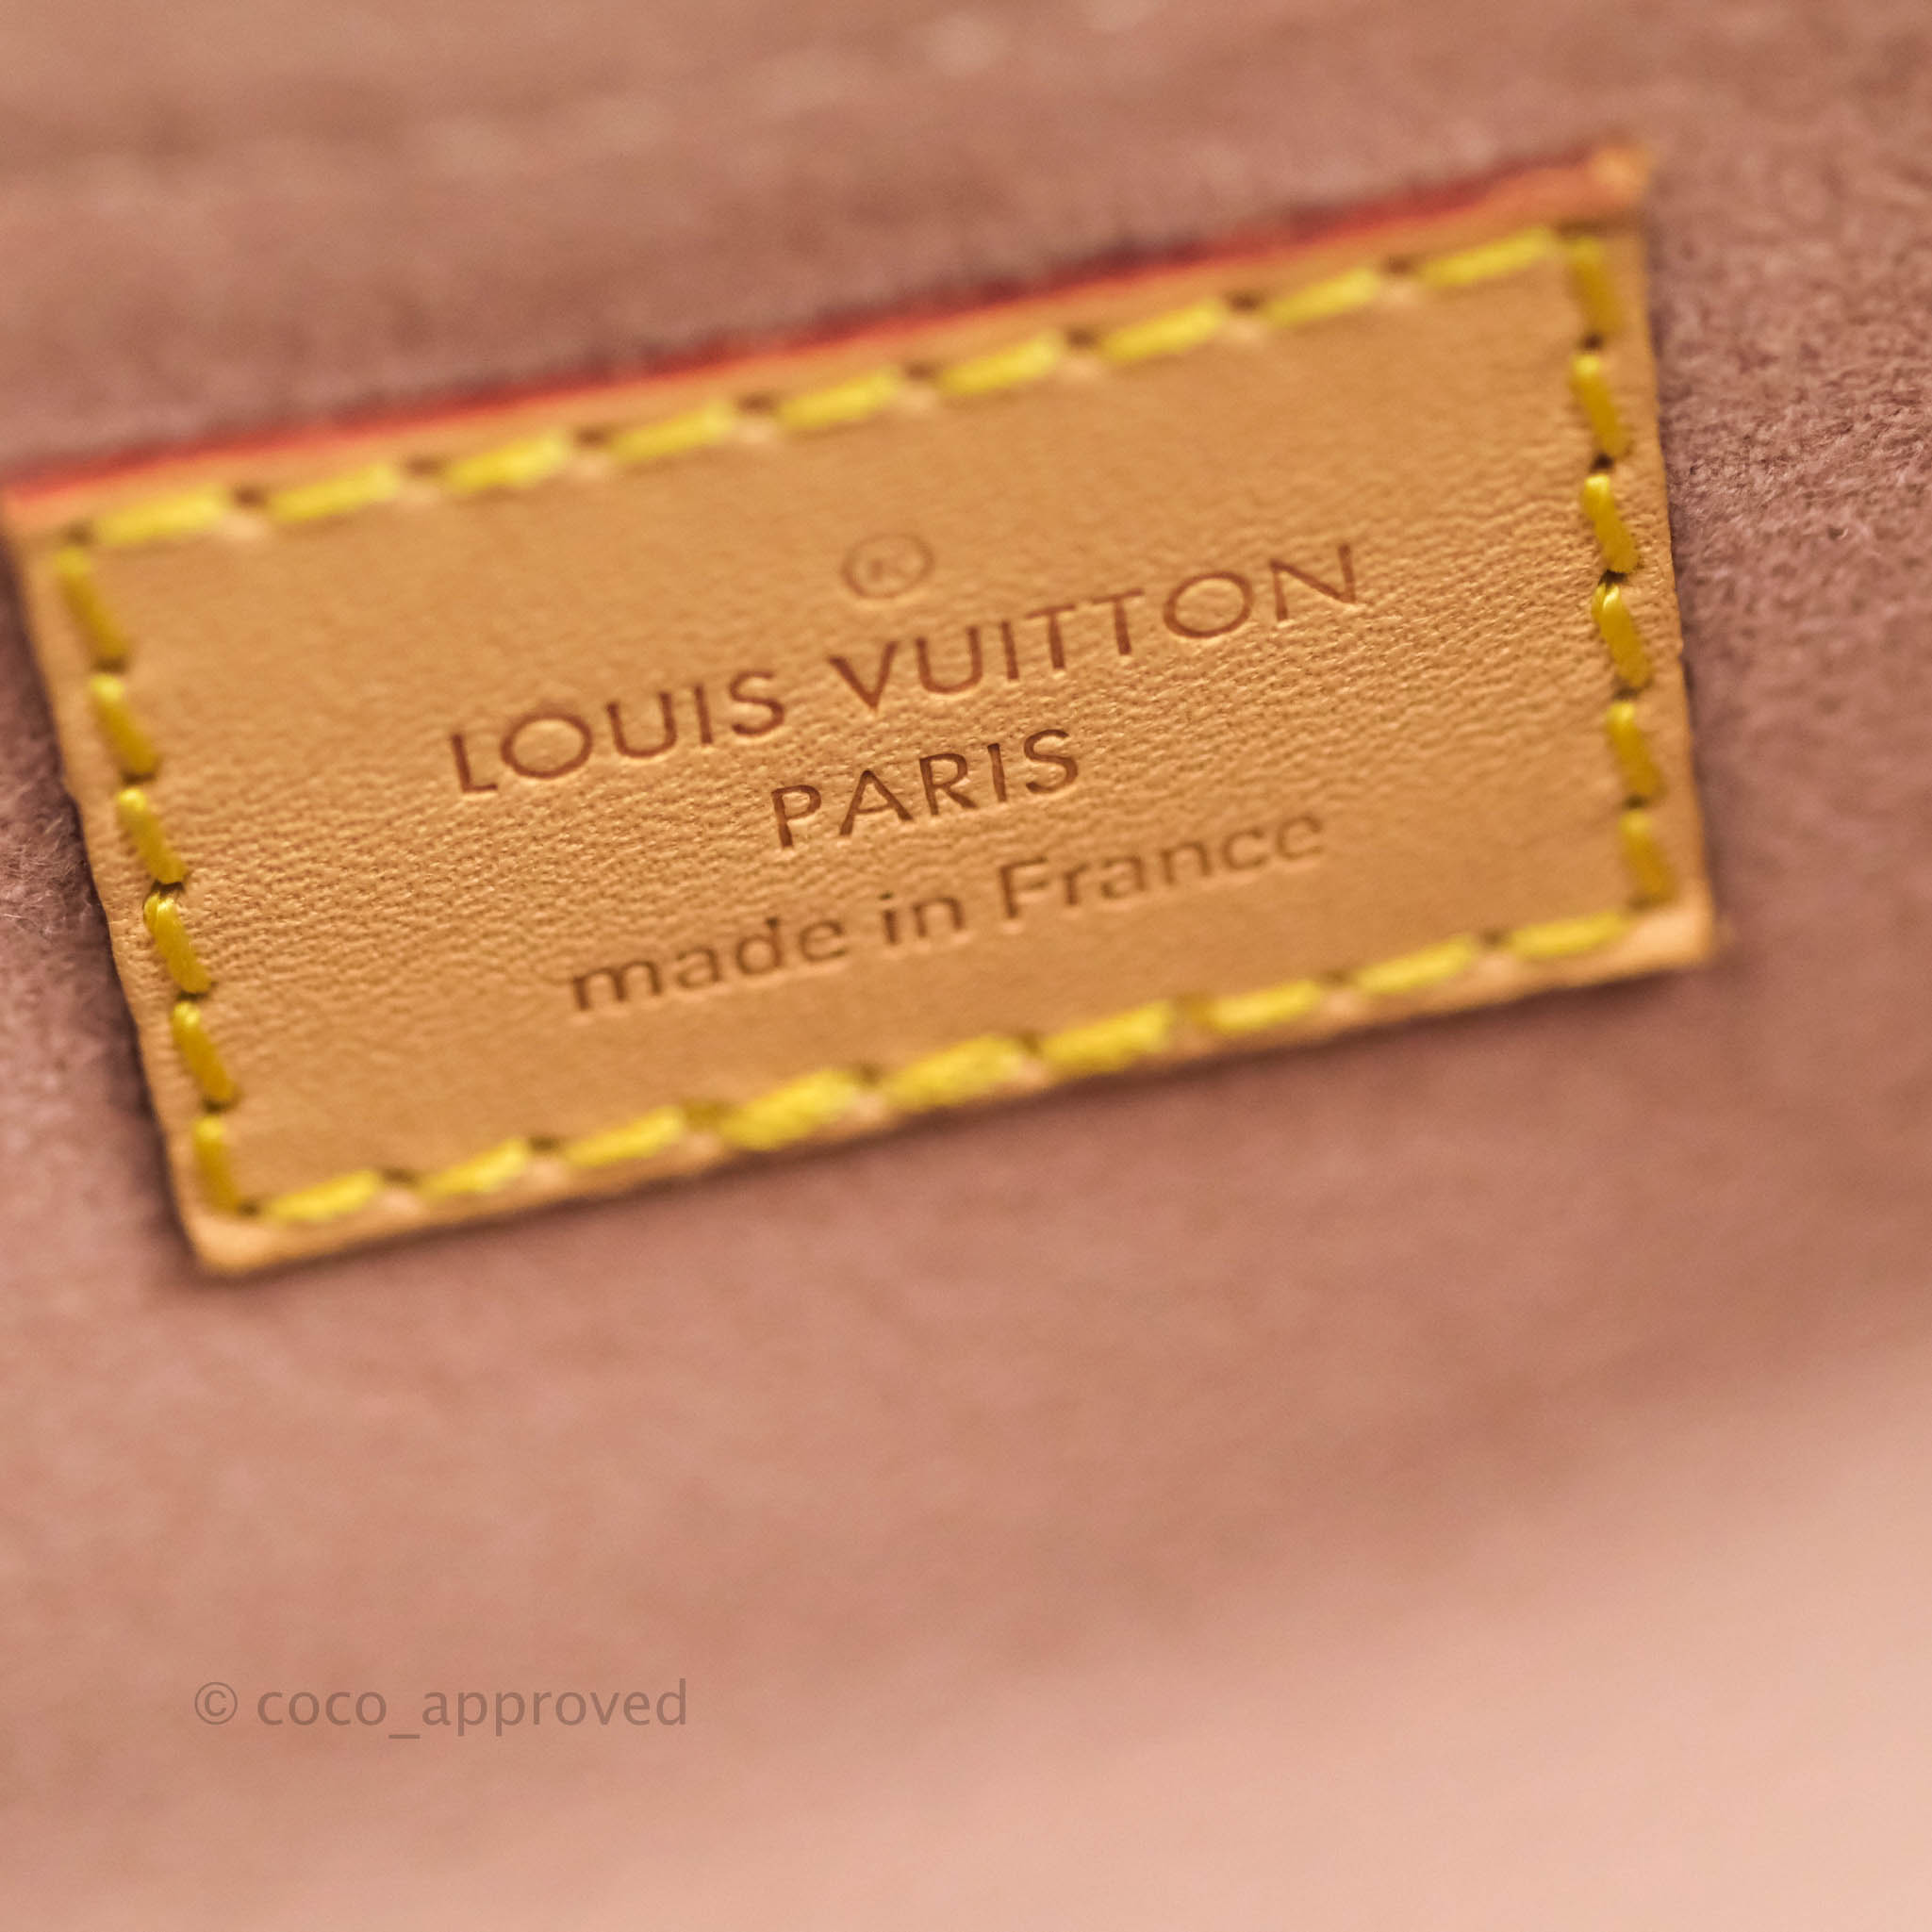 LOUIS VUITTON Pallas Python Monogram Canvas Shoulder Bag Bordeaux - Fi